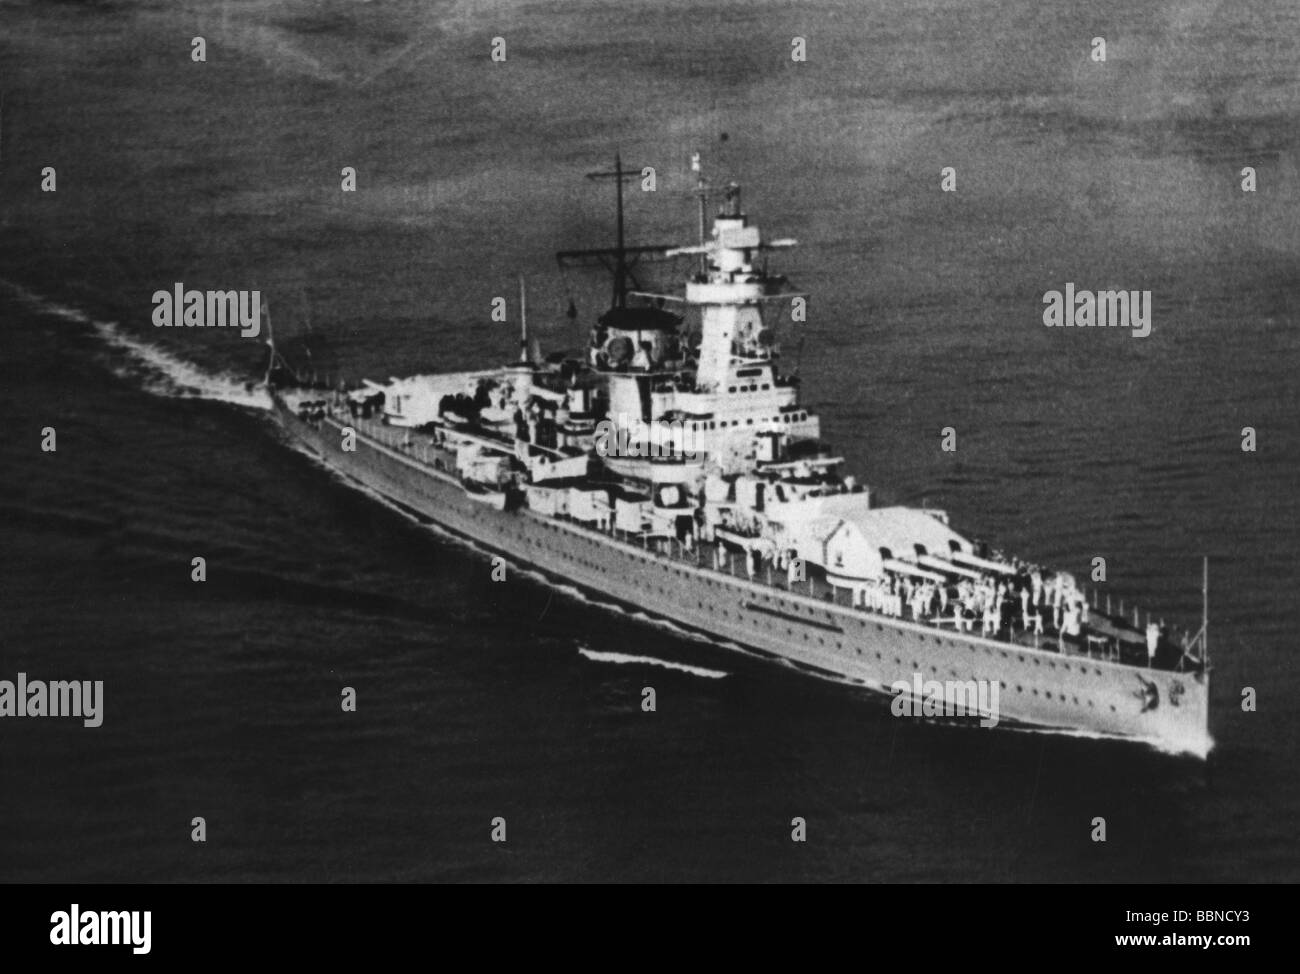 Eventi, Seconda guerra mondiale / seconda guerra mondiale, guerra navale, nave da battaglia tascabile tedesca 'Admiral Graf Spee' nel canale inglese, fine agosto 1939, fotografia aerea, Foto Stock